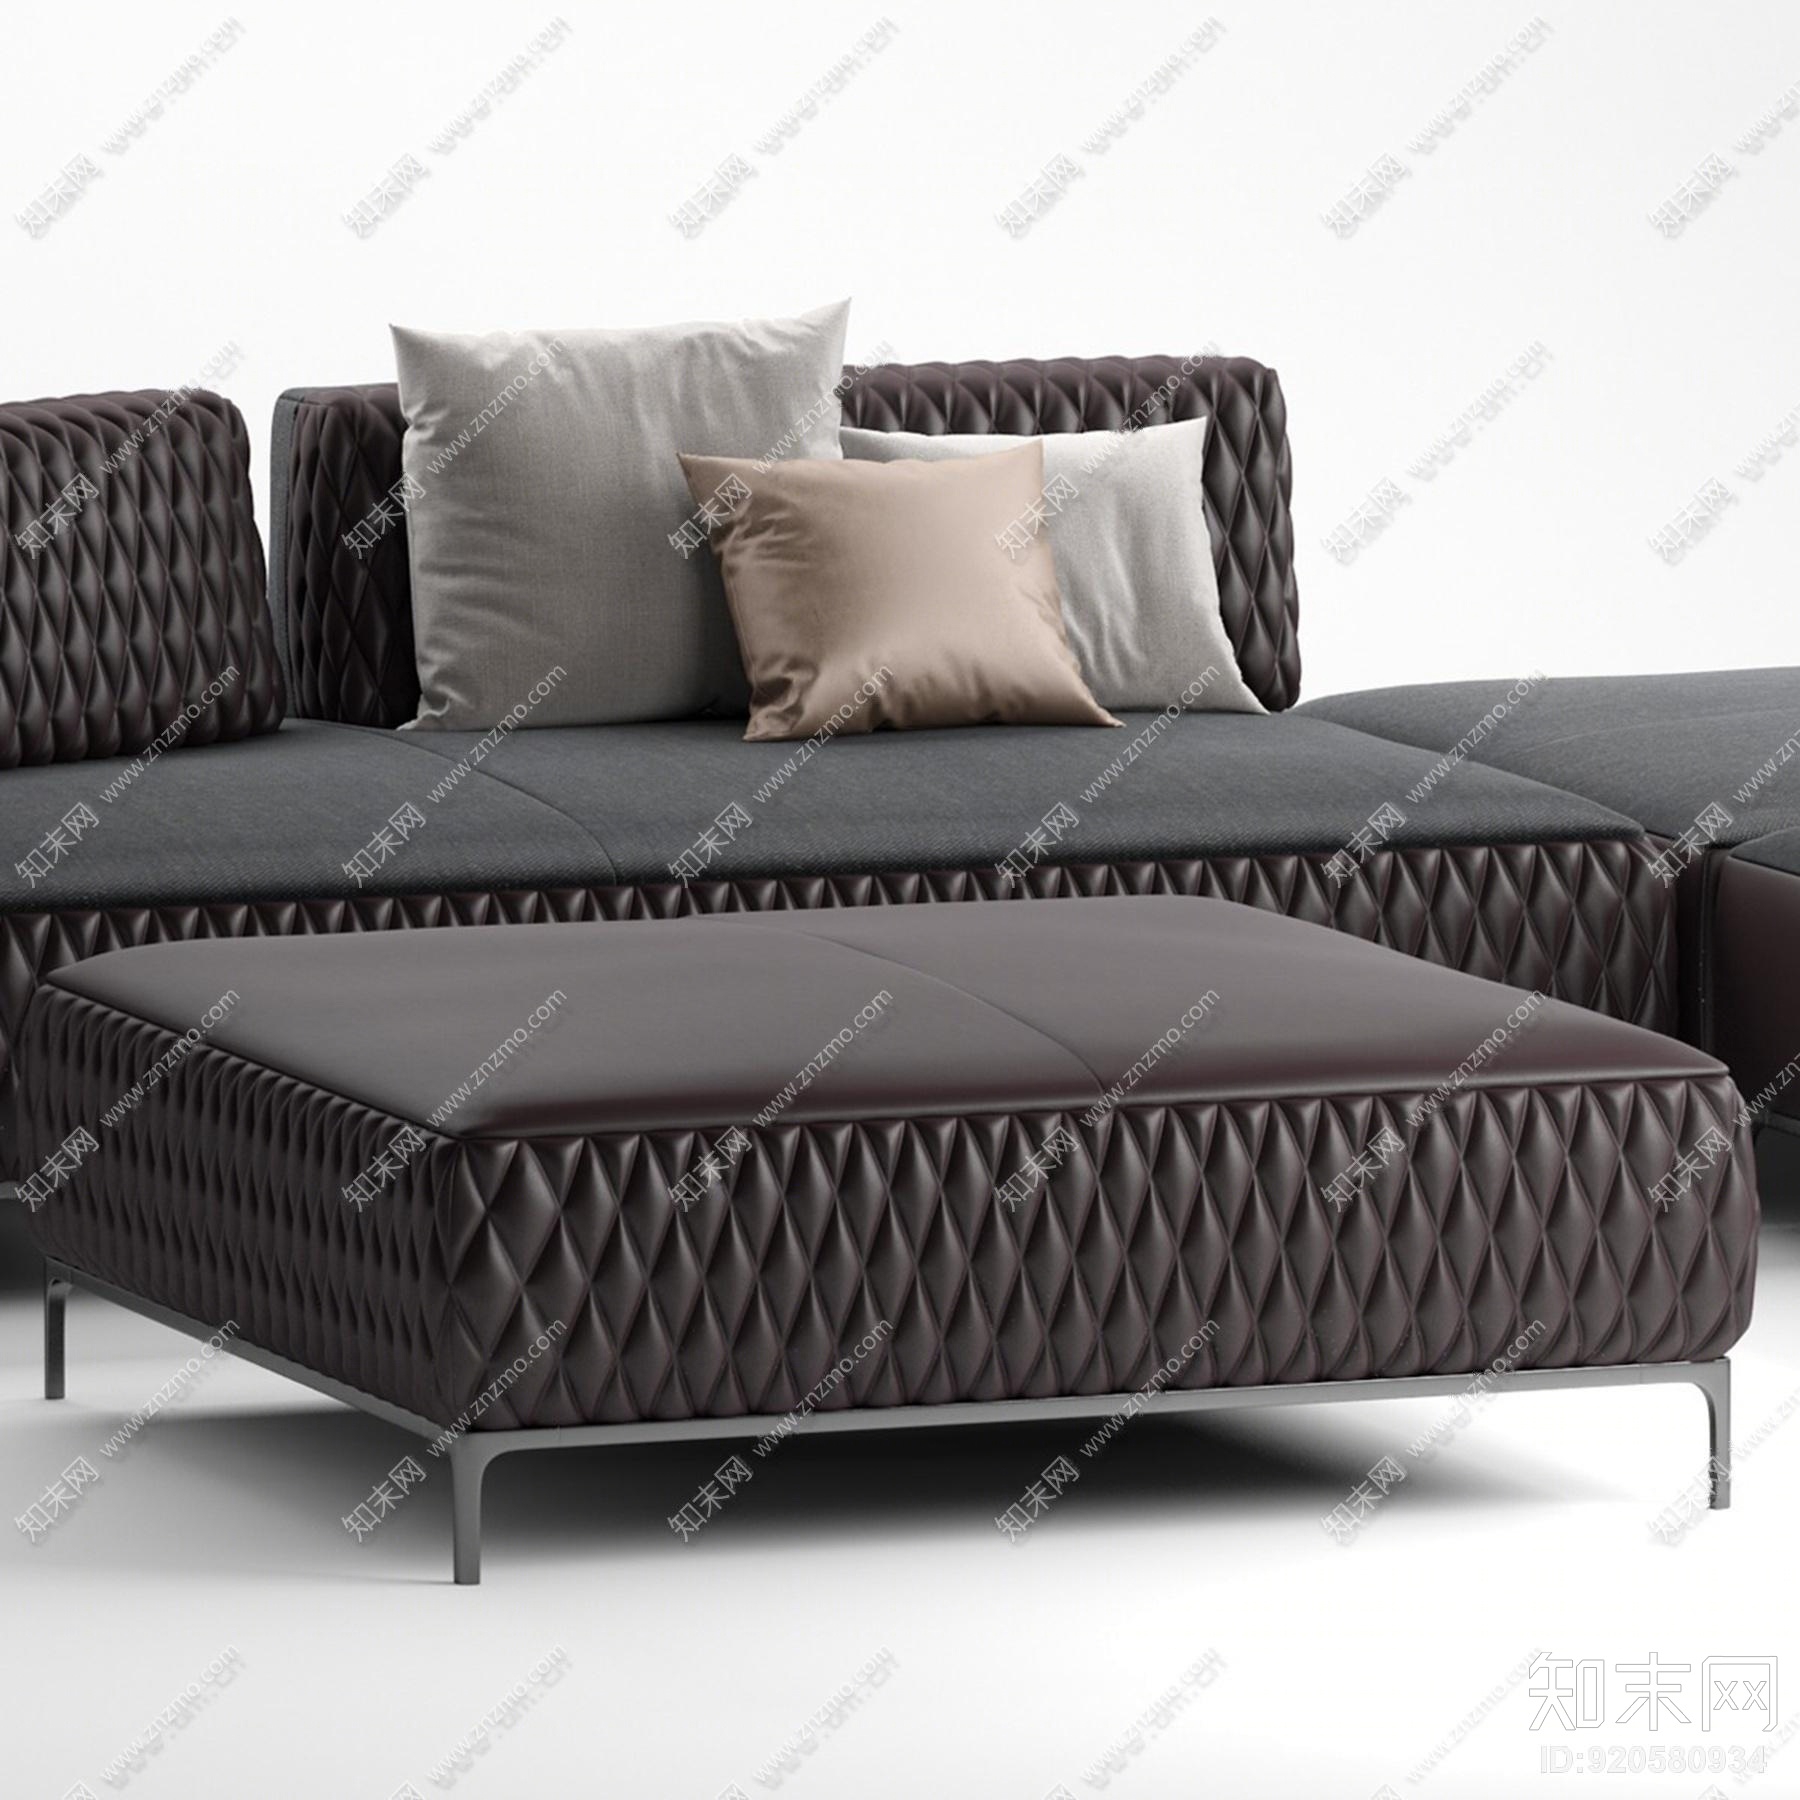 现代转角皮革沙发沙发凳边几组合3d模型下载【id:920580934】